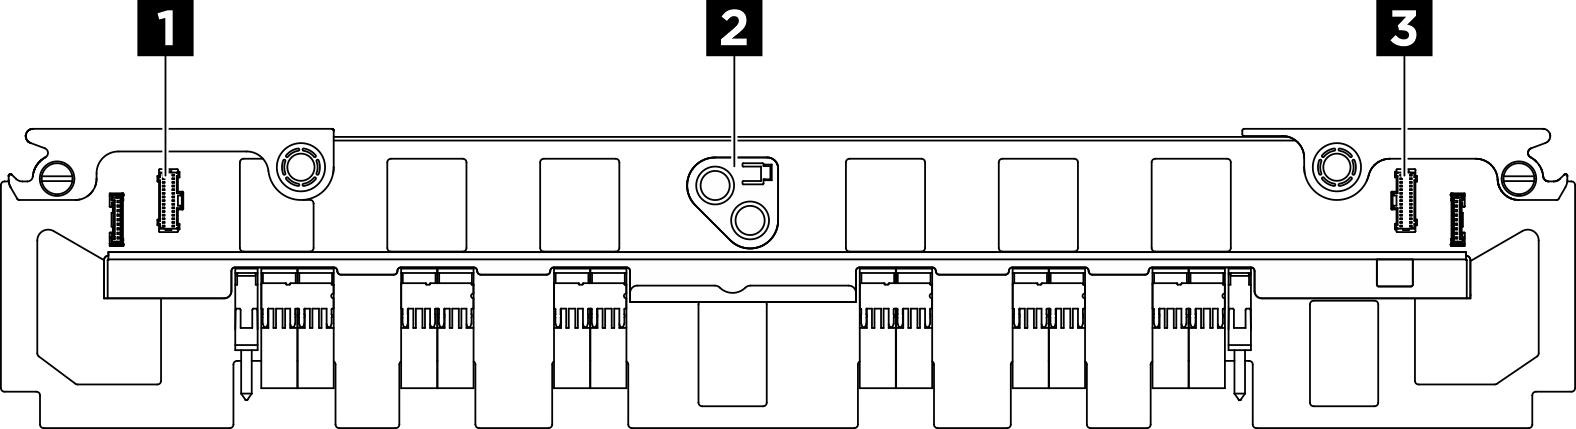 interposer PSU connectors